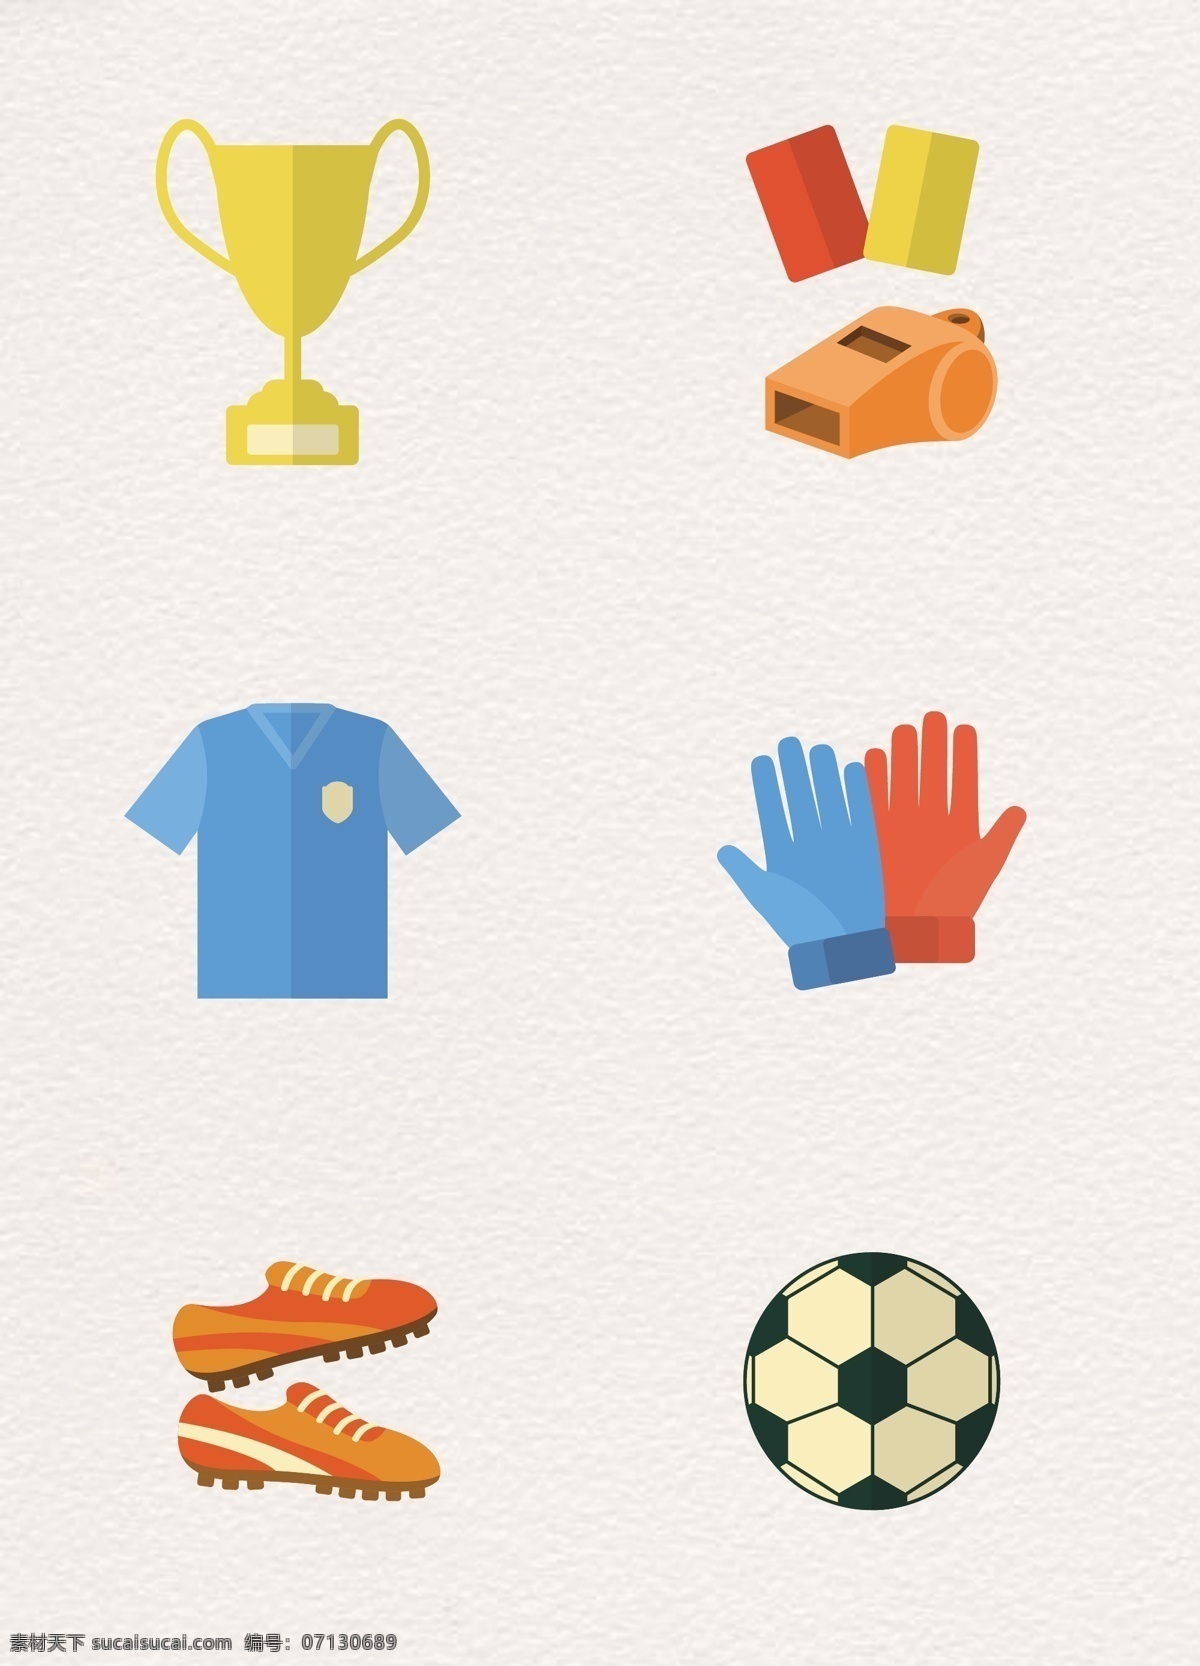 扁平 风格 足球比赛 设计素材 扁平化 彩色 卡通 奖杯 世界杯素材 卡通足球比赛 足球比赛素材 哨子 手套 球衣 球鞋 卡通足球